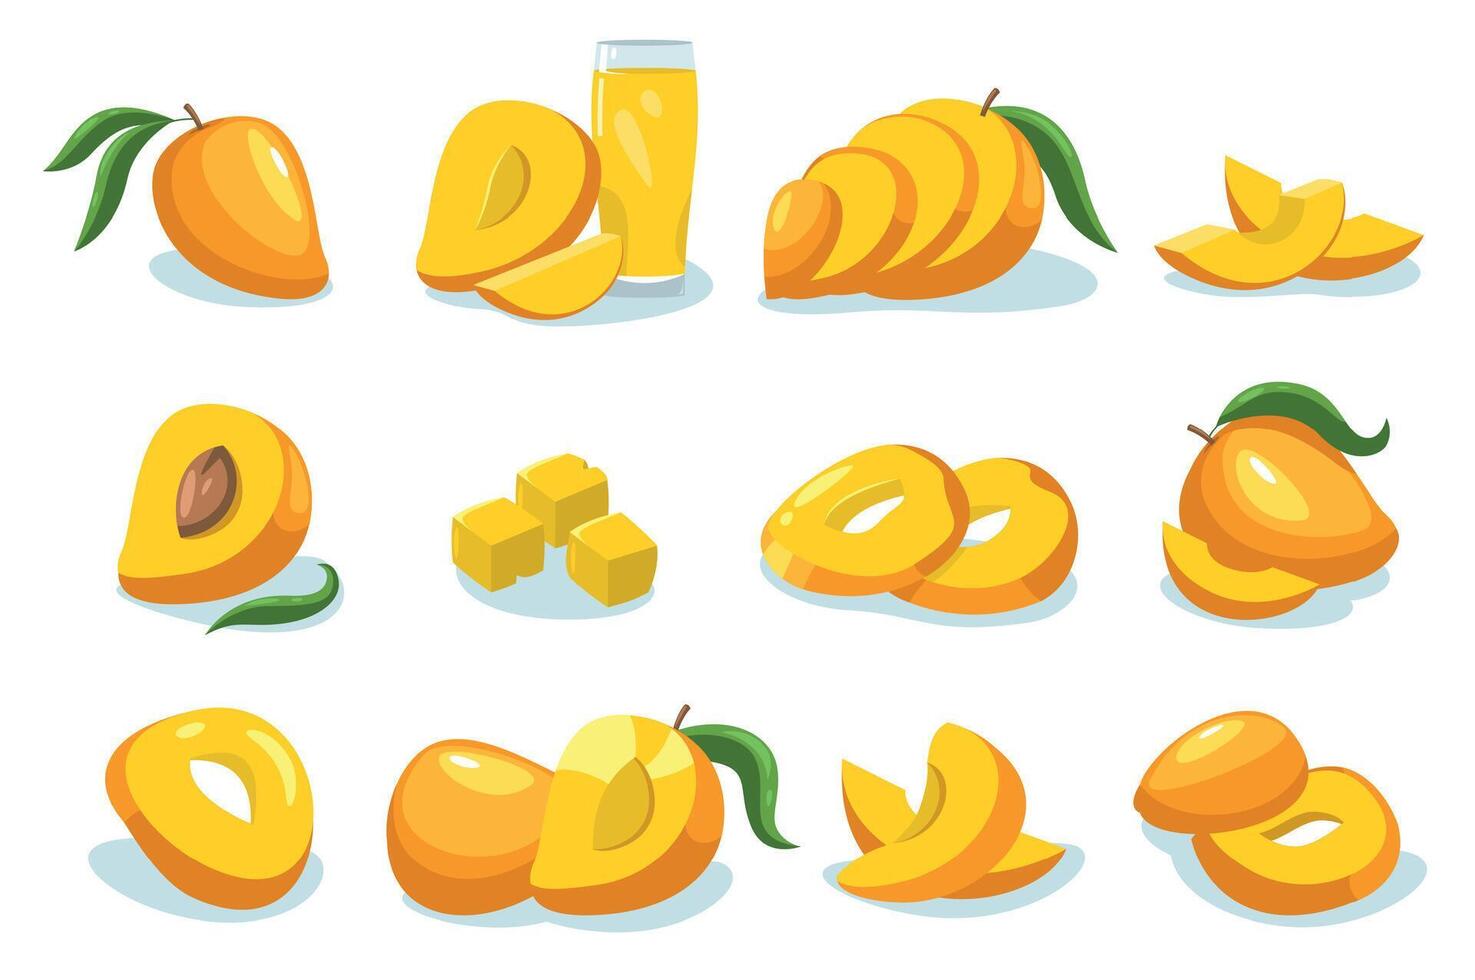 mango recopilación. dibujos animados todo maduro Fruta tropical dulce piezas, orgánico mango dieta sano nutrición, vegetariano sano comida concepto. vector aislado conjunto